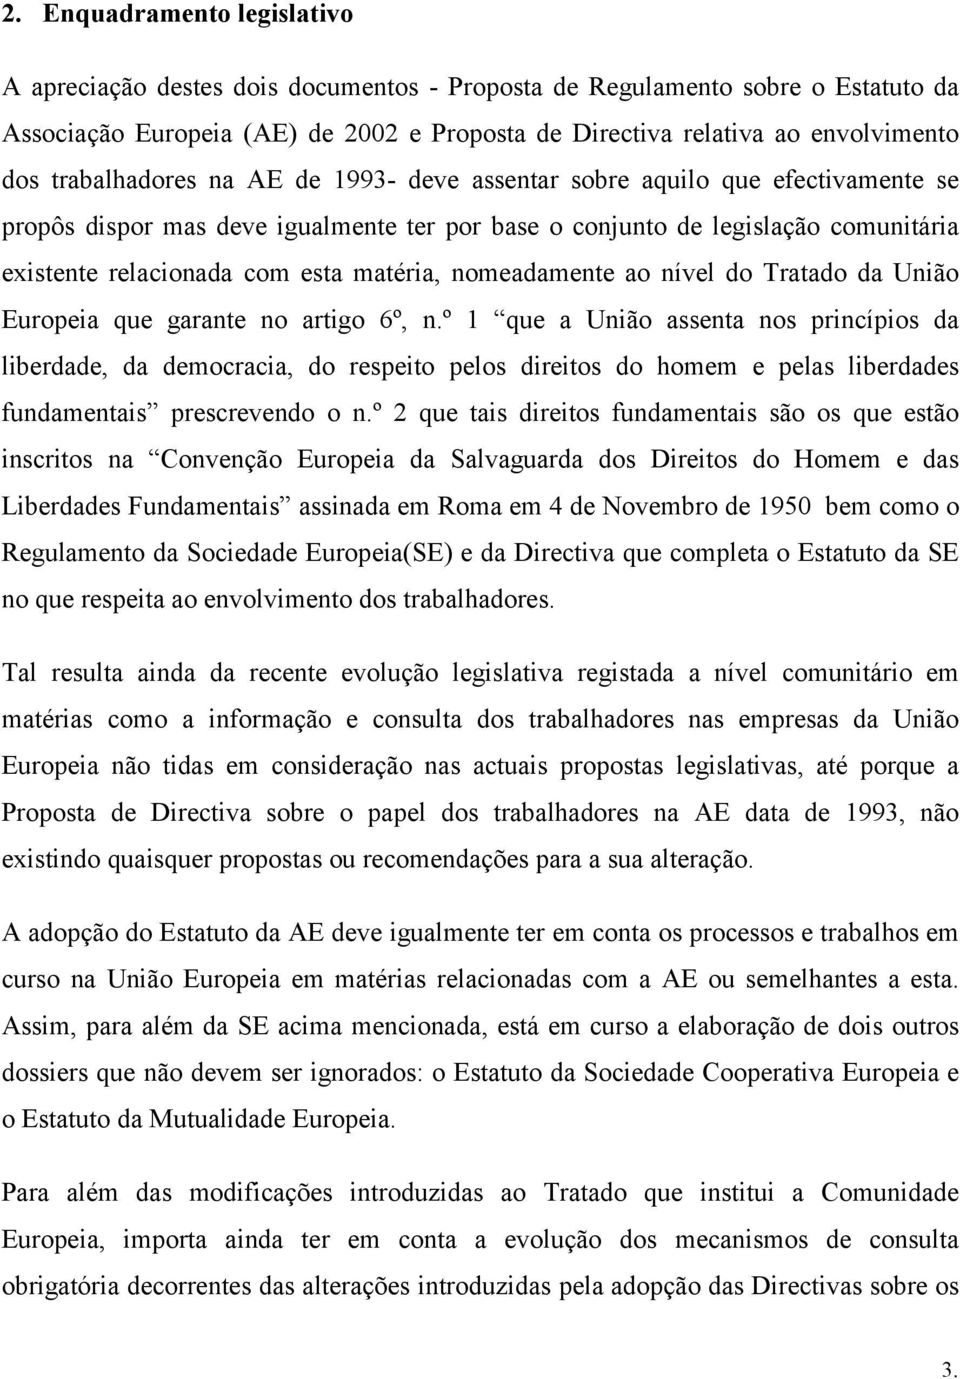 matéria, nomeadamente ao nível do Tratado da União Europeia que garante no artigo 6º, n.